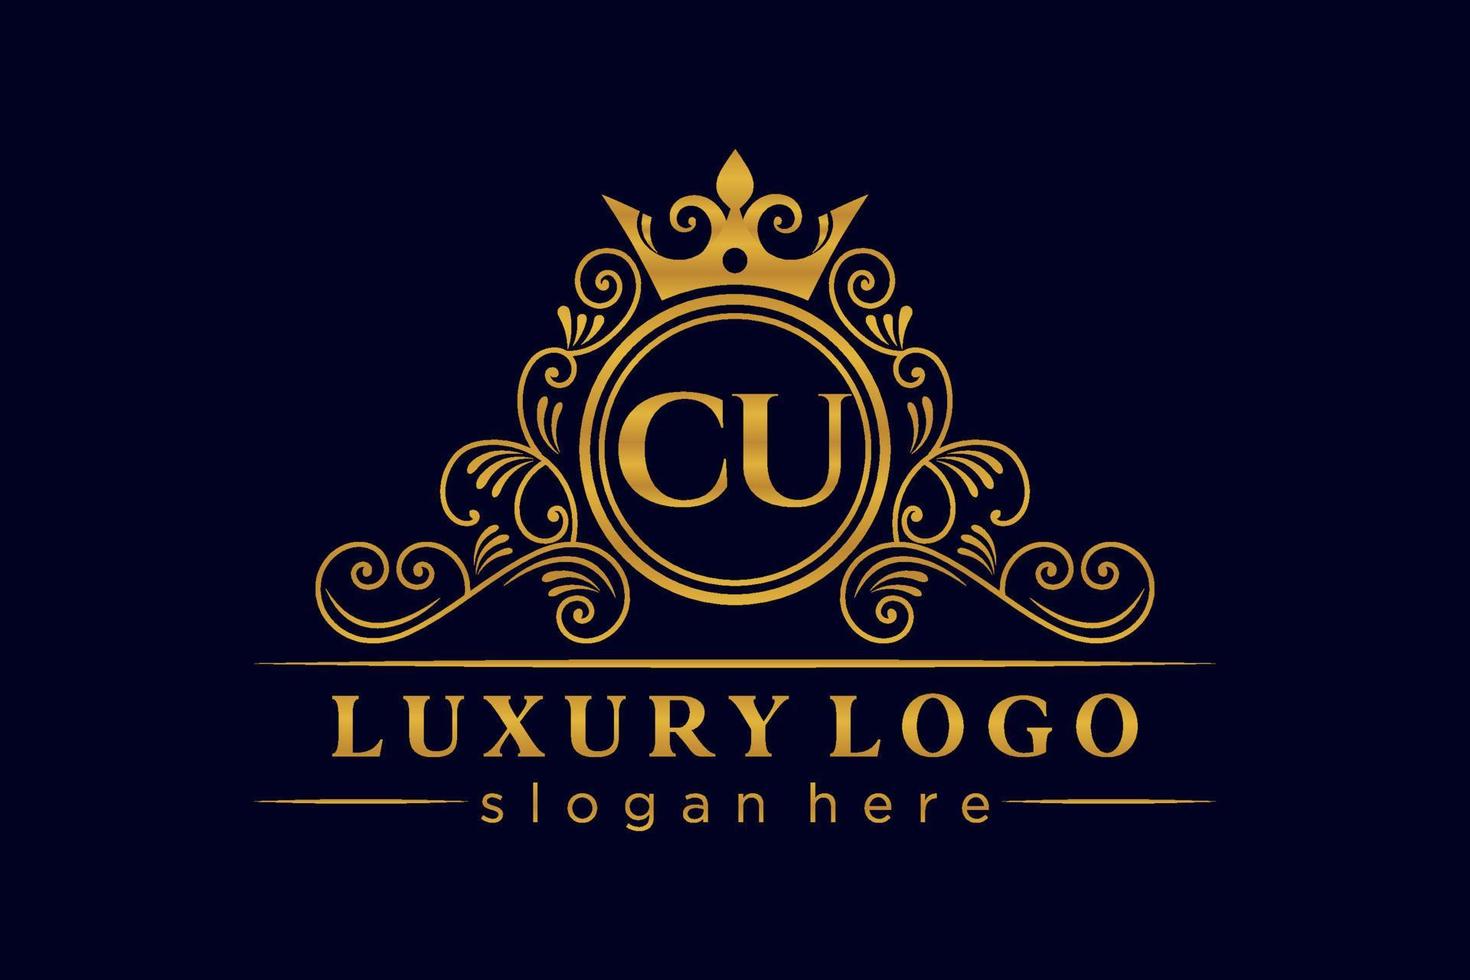 CU Initial Letter Gold calligraphic feminine floral hand drawn heraldic monogram antique vintage style luxury logo design Premium Vector